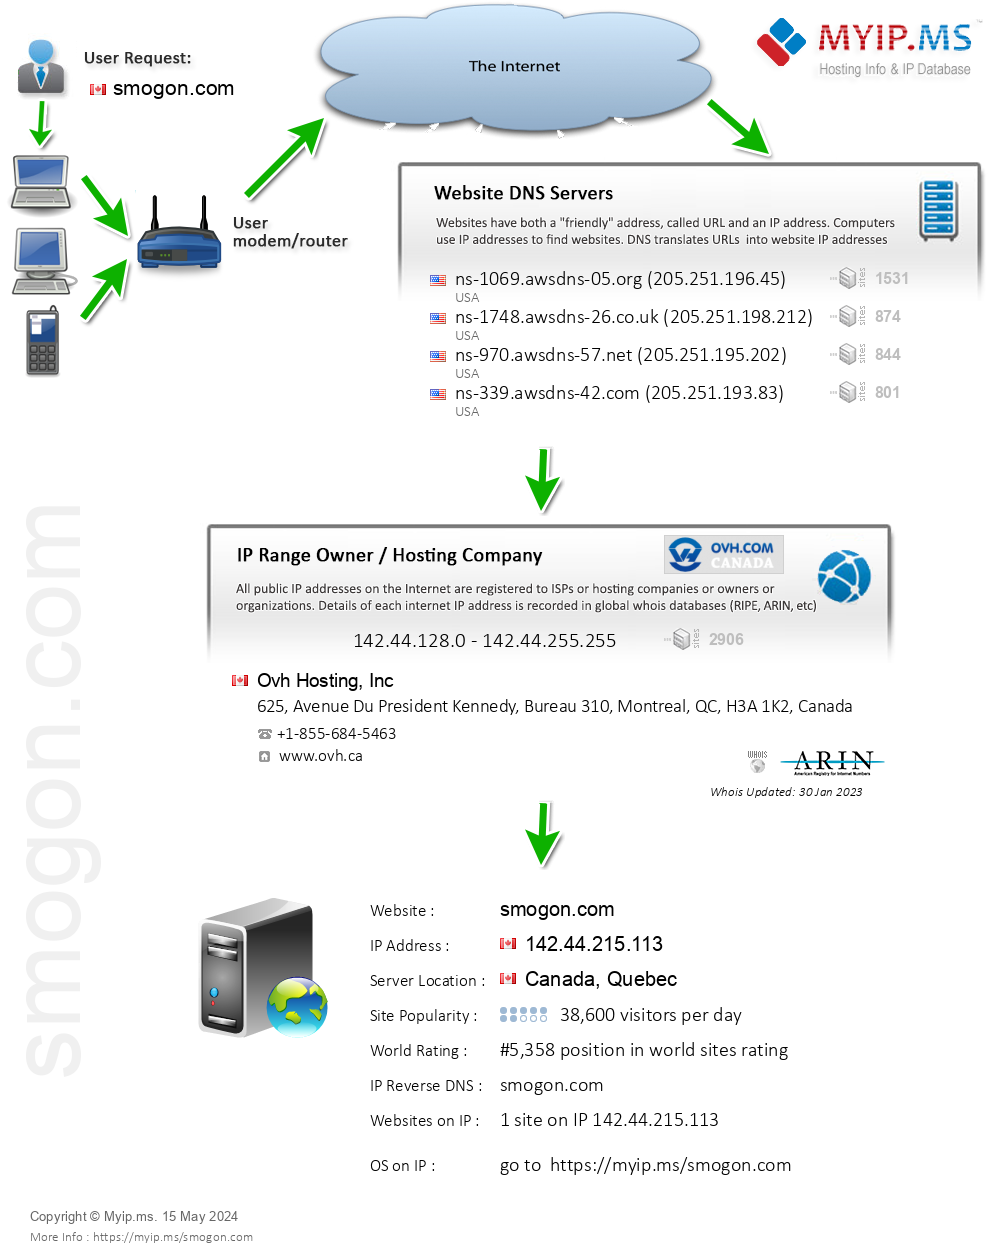 Smogon.com - Website Hosting Visual IP Diagram